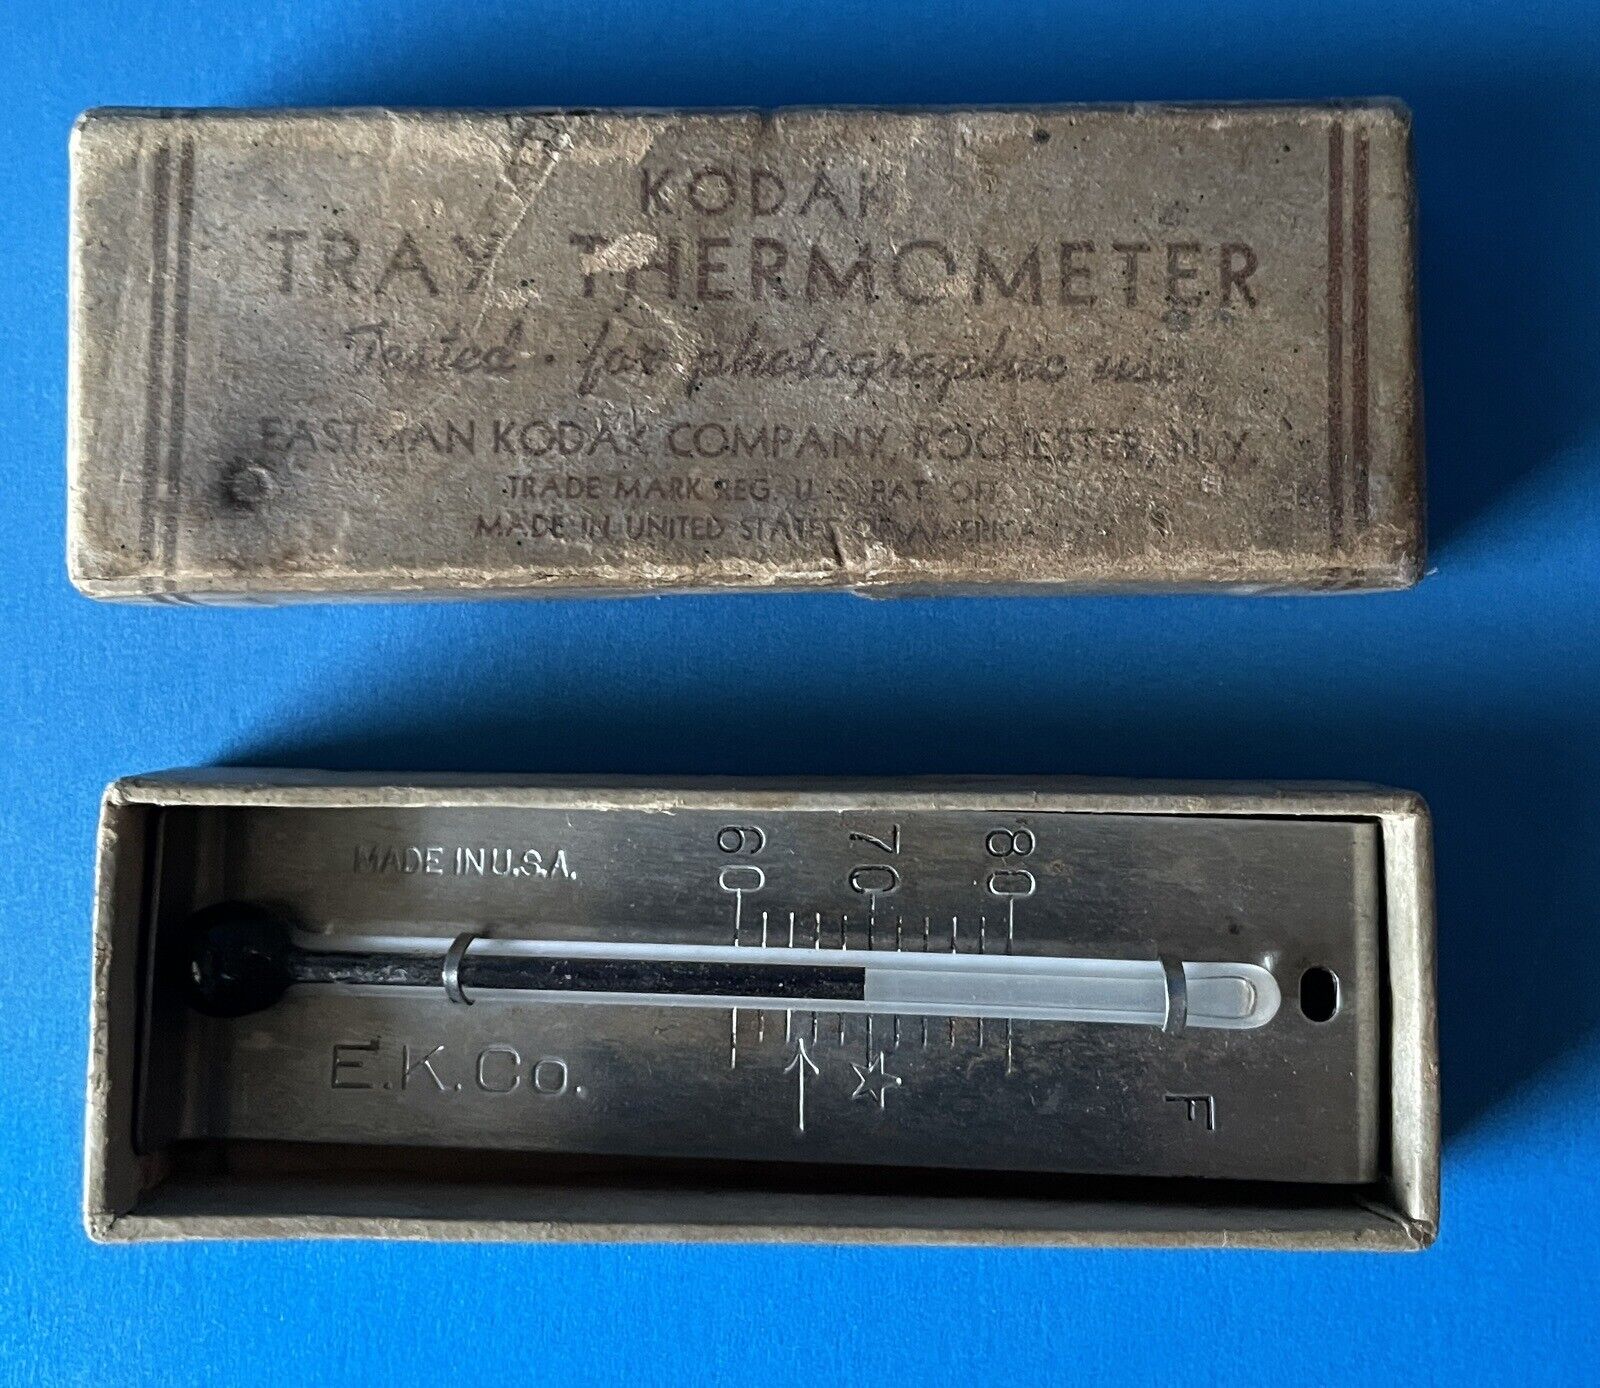 Vintage Kodak Tray Thermometer With Original Box